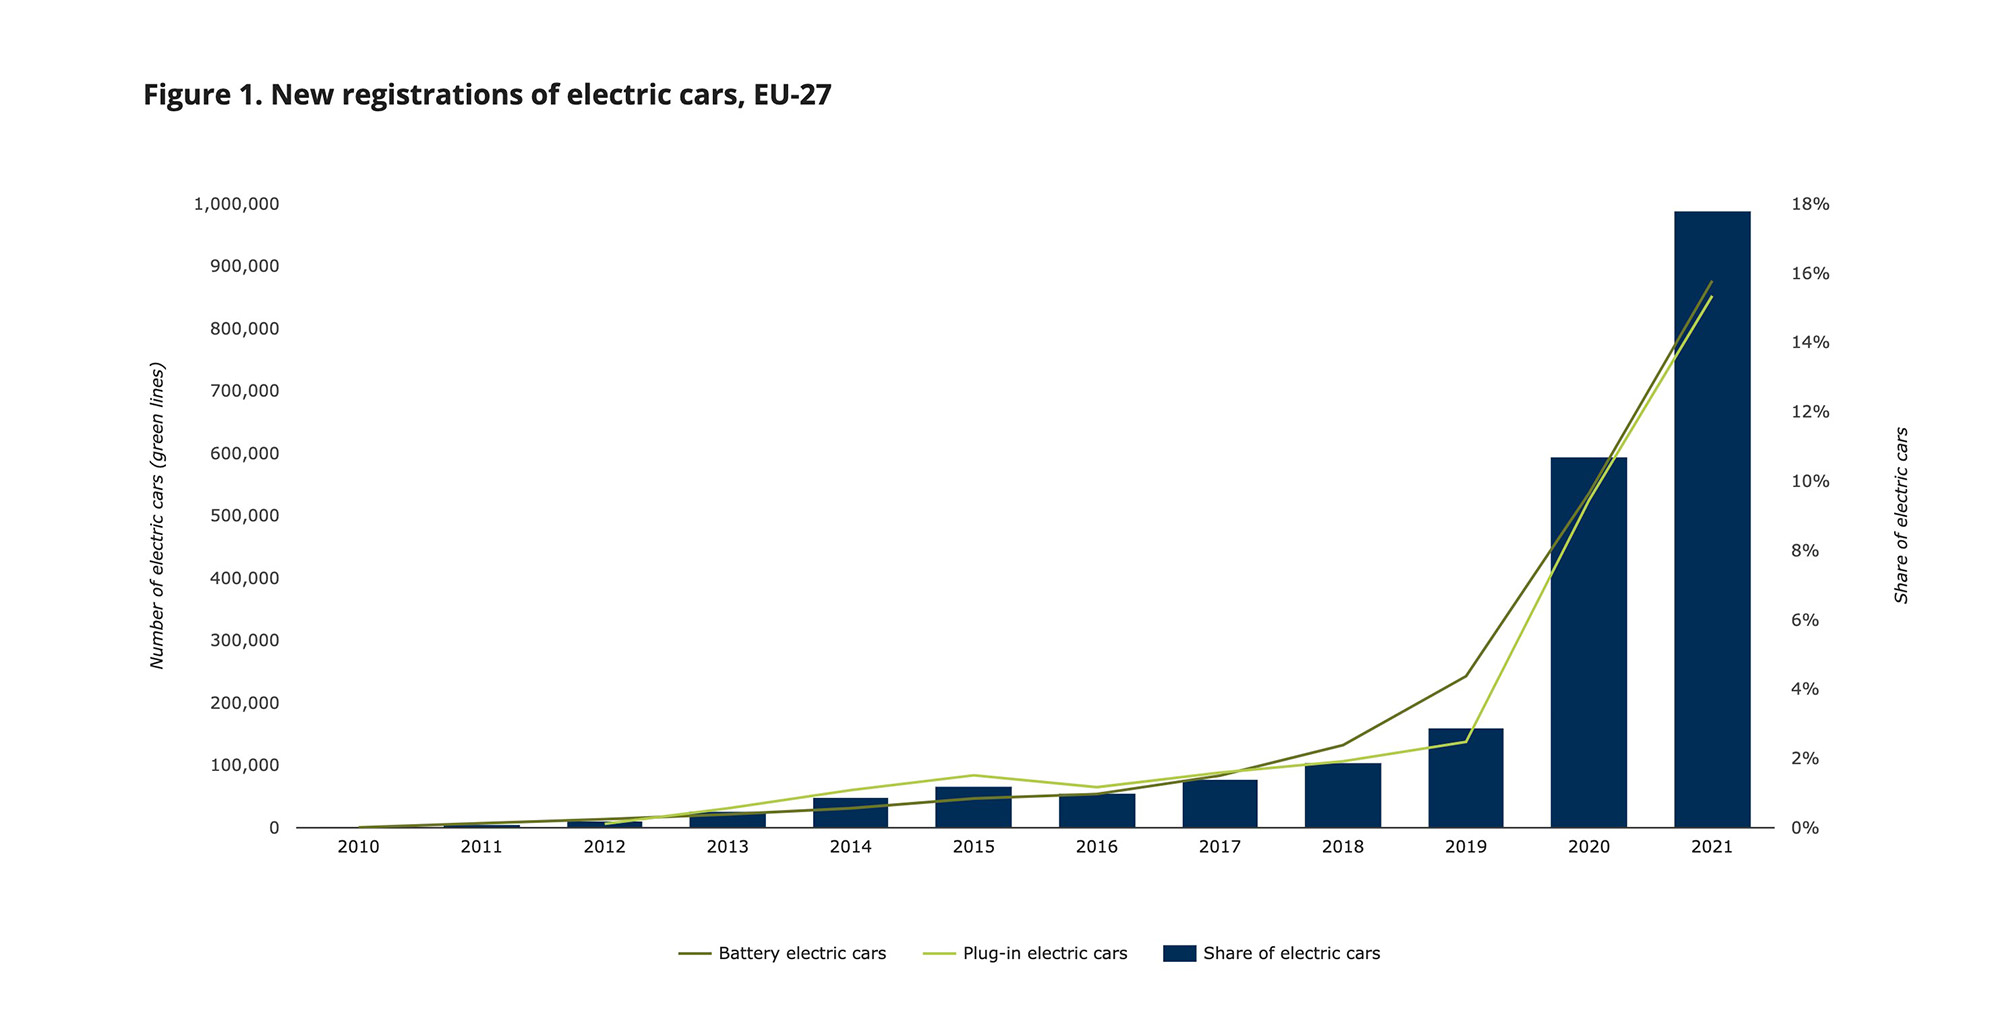 инфографика, показывающая рост количества регистраций электромобилей с 2010 по 2021 год